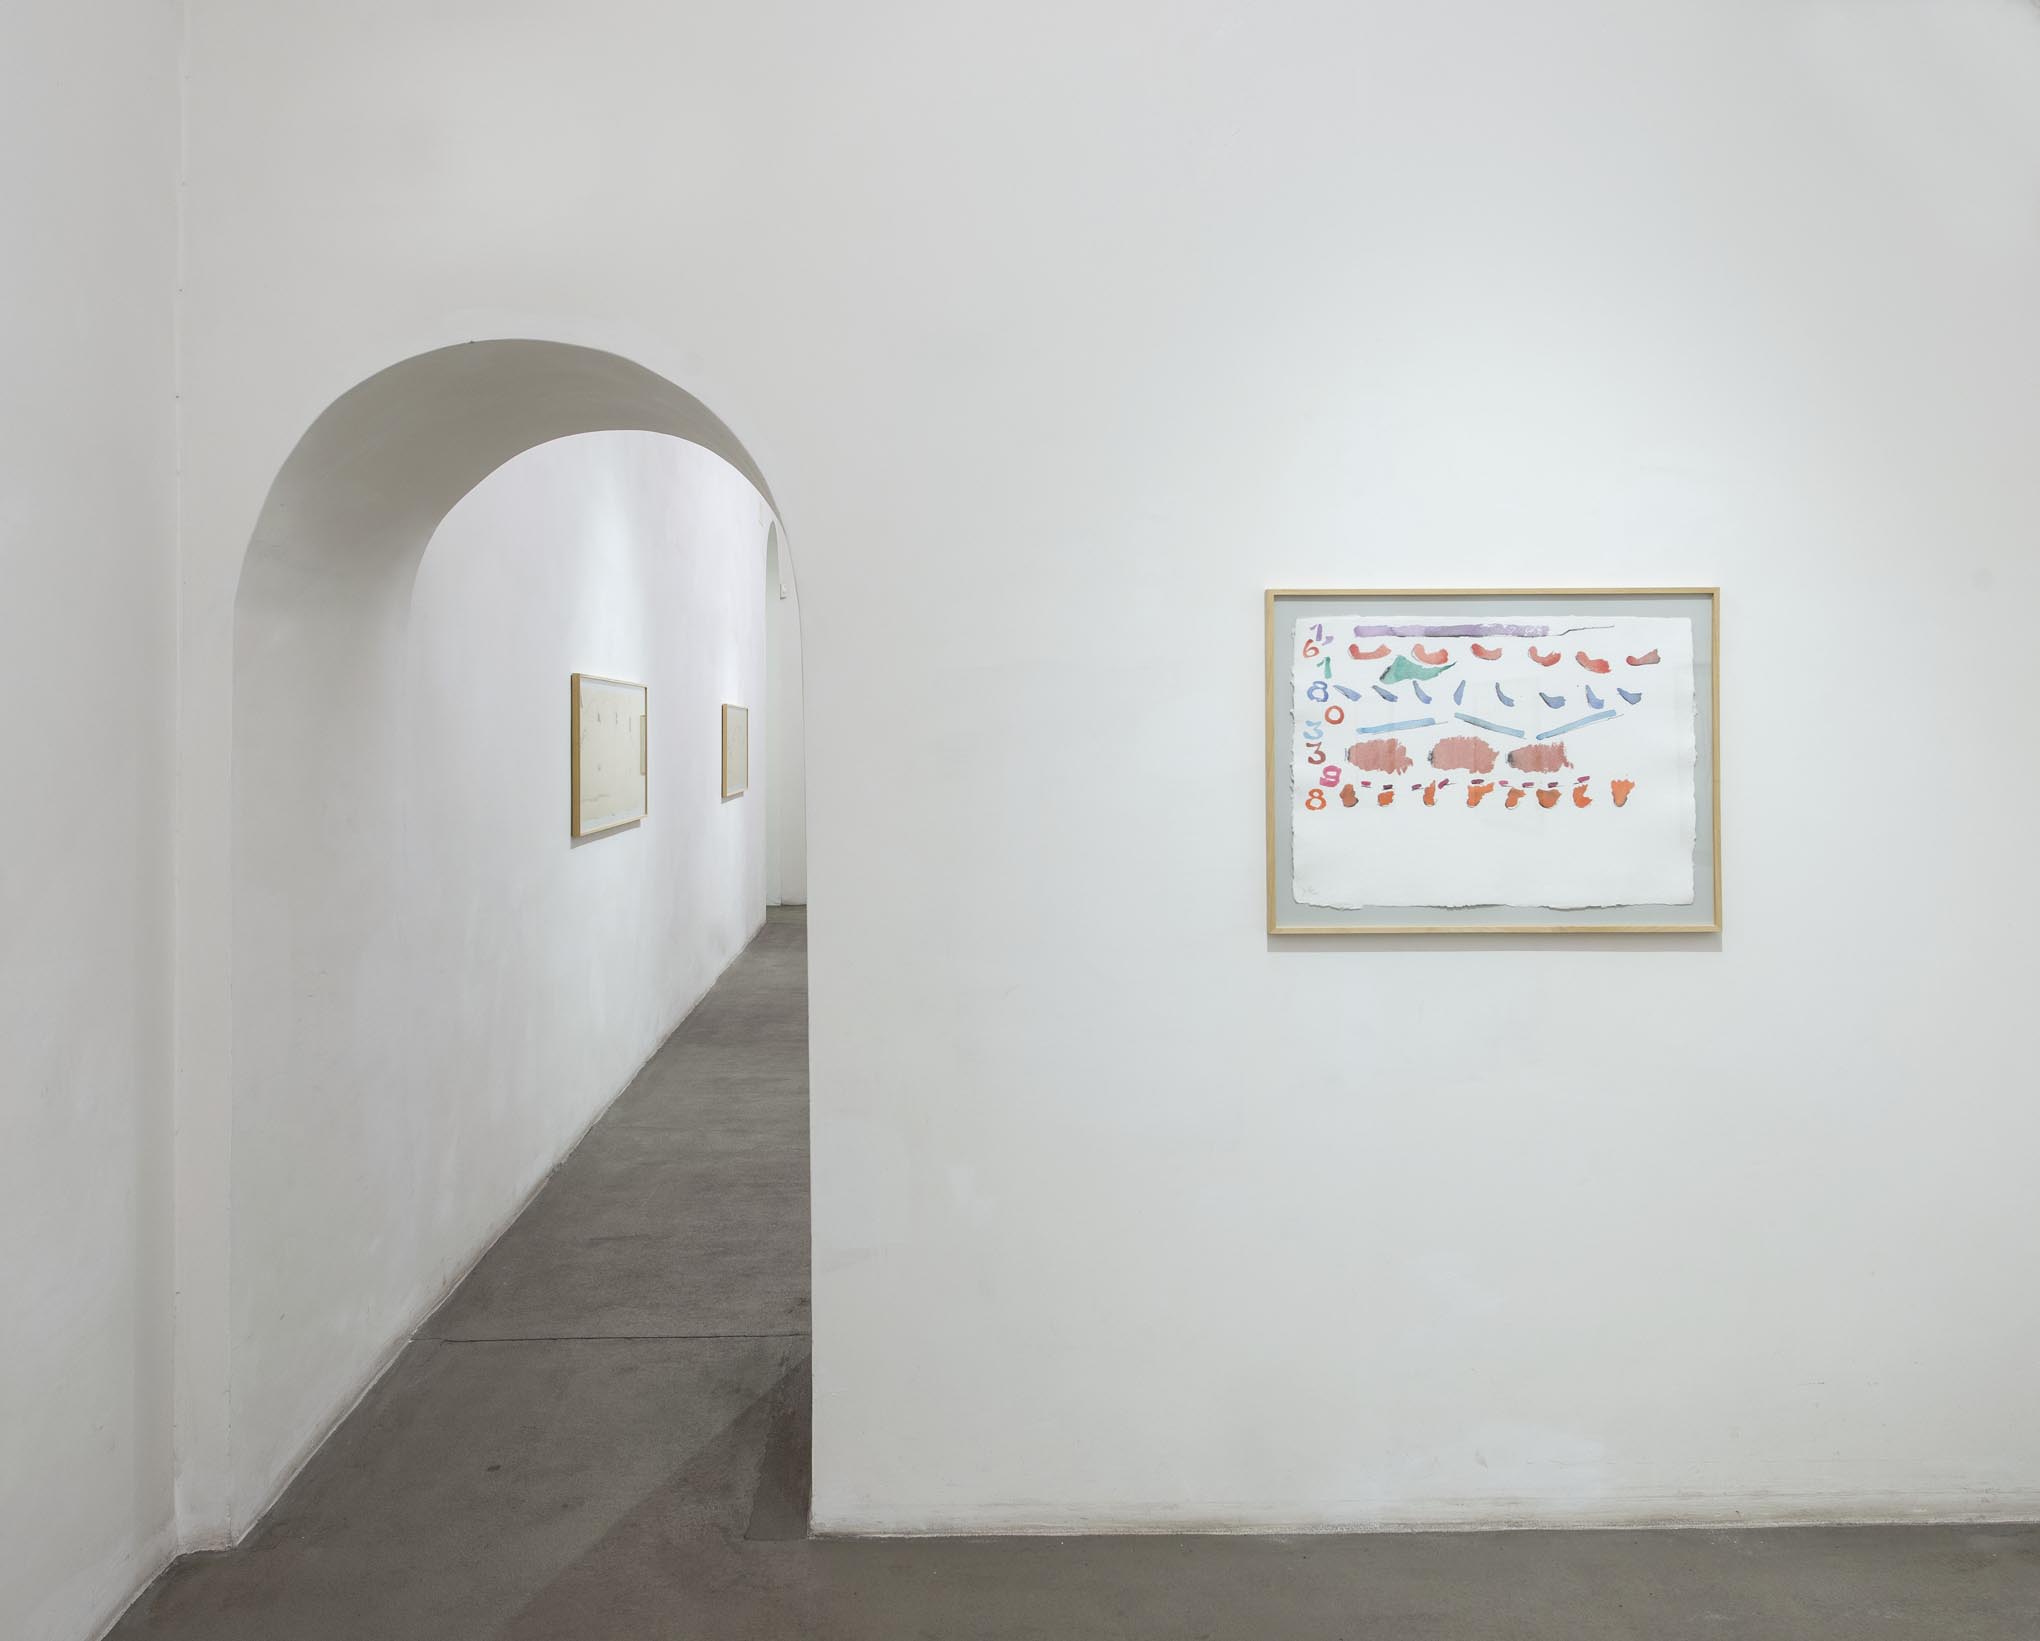 17. Giorgio Griffa: Works on Paper
Installation view, Roma, 2014, foto Giorgio Benni